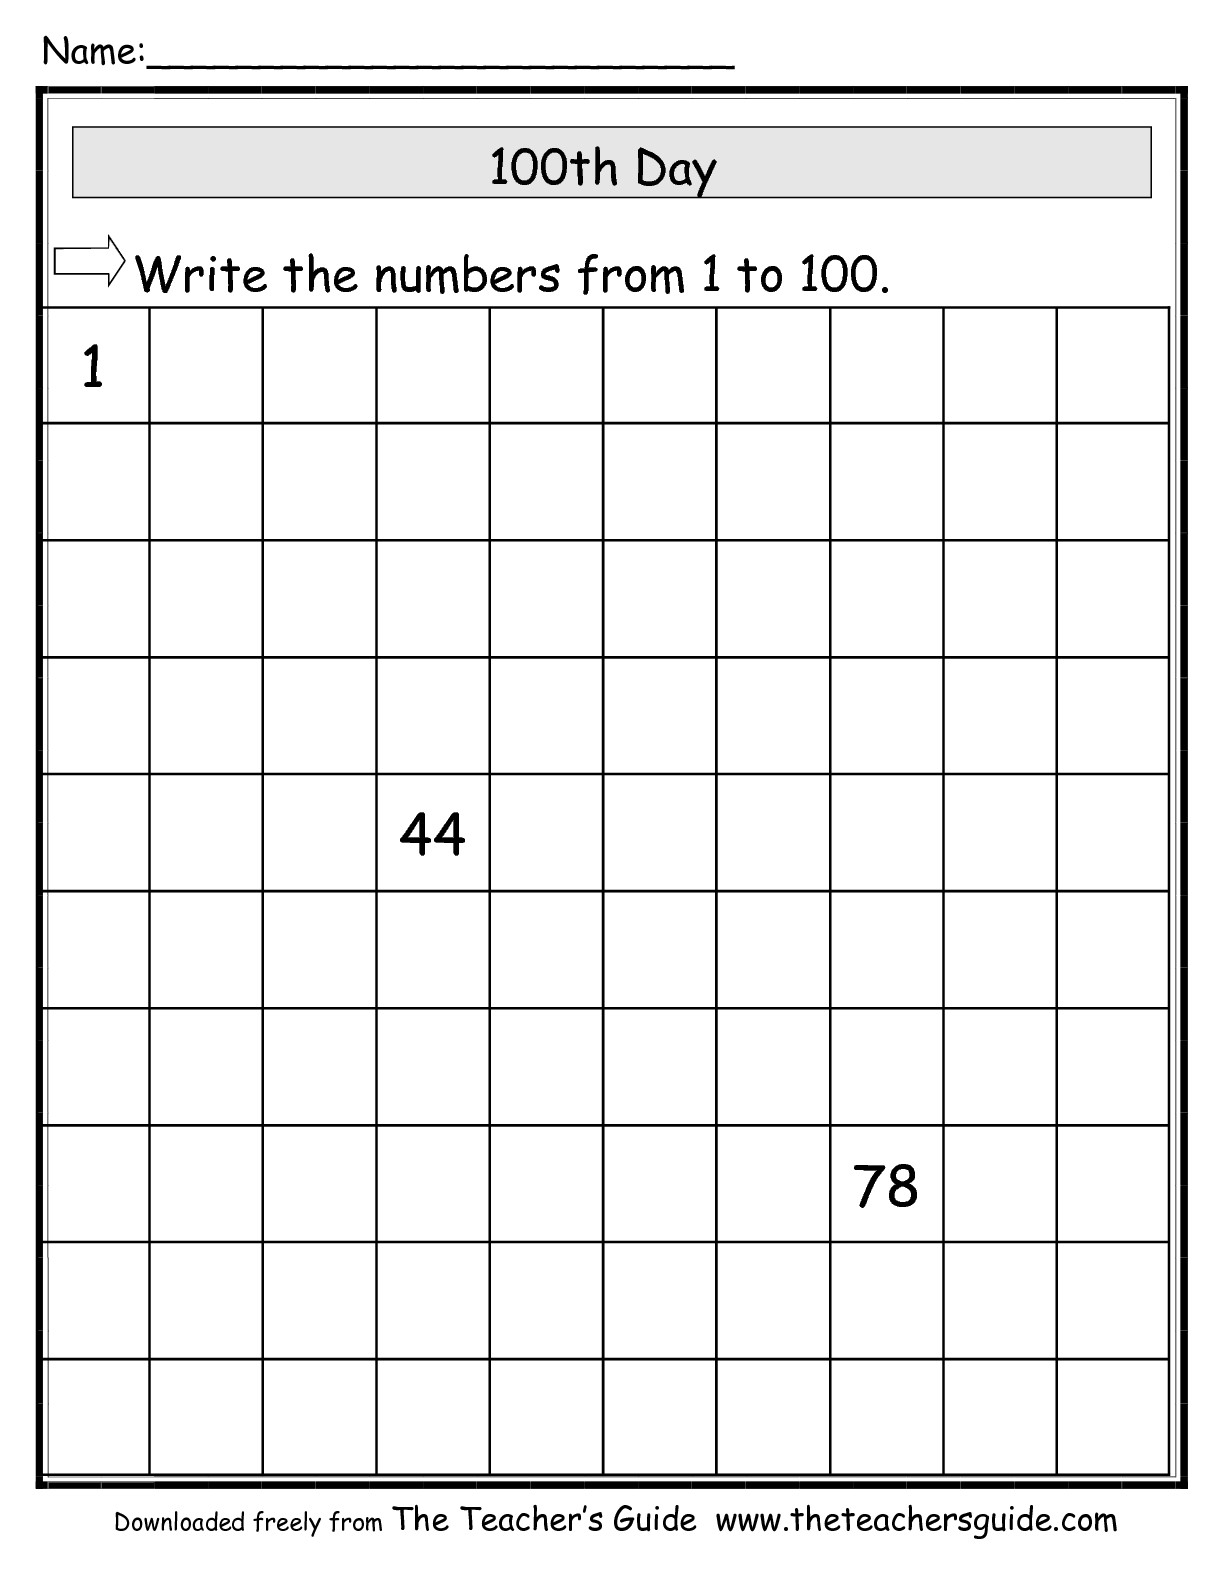 15 Fill Missing Number Worksheets Worksheeto